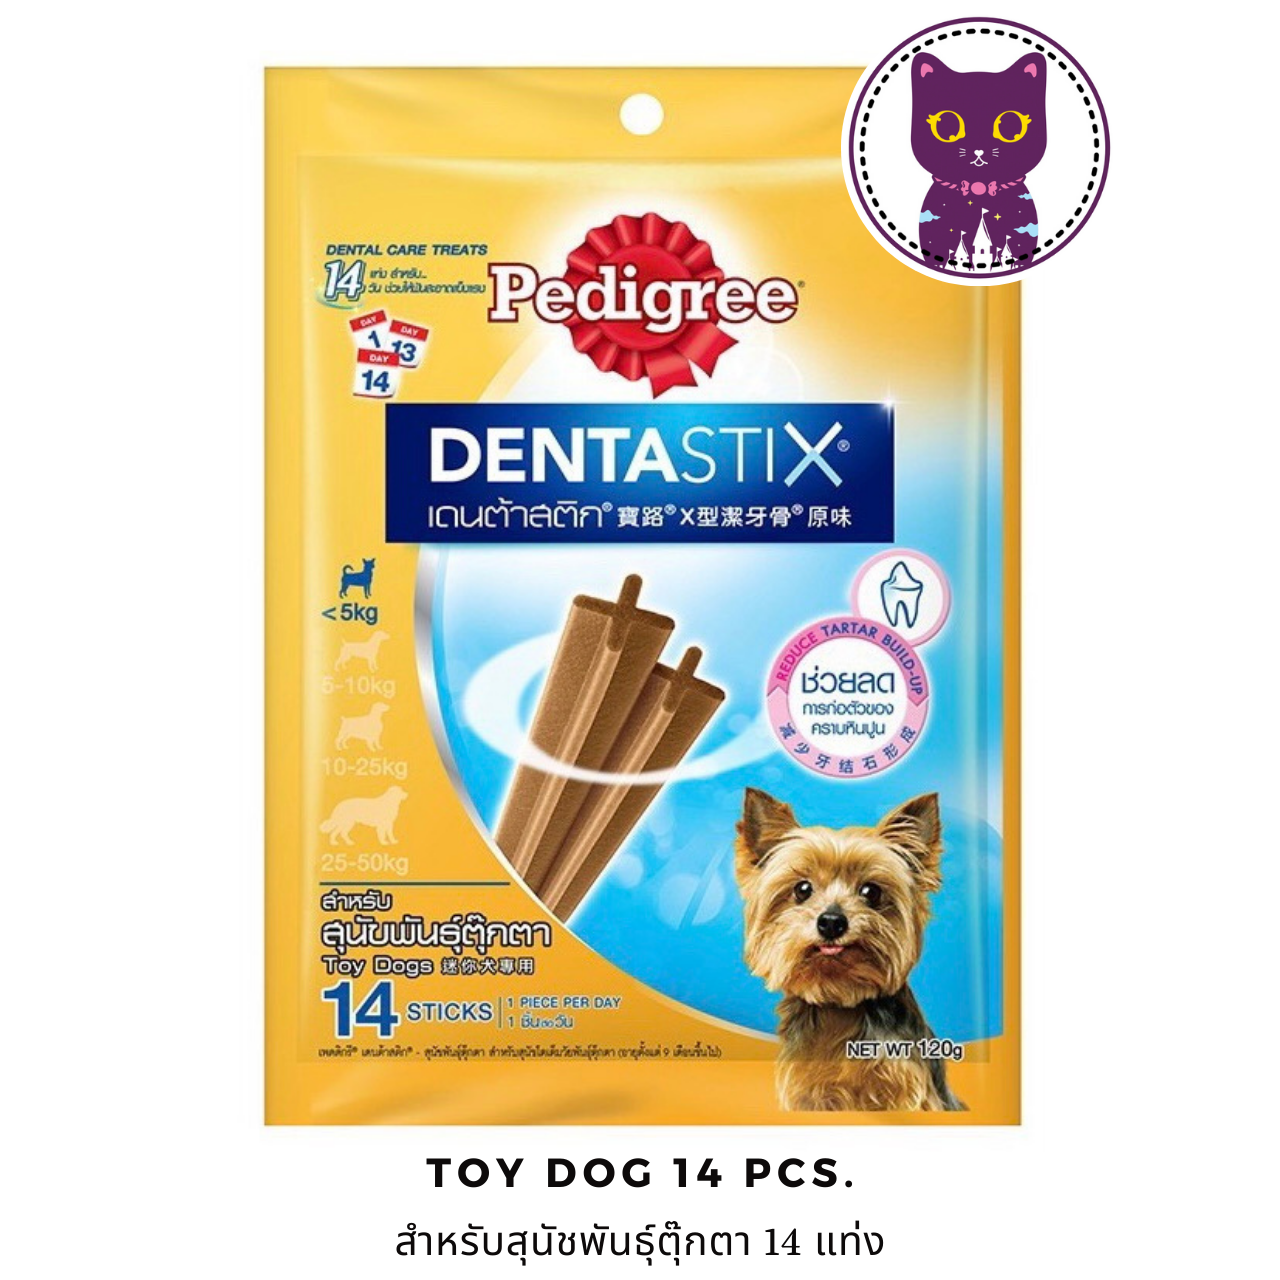 [WSP] Pedigree Denta Stix Original Flavor (Toy Dogs) เพ็ดดิกรี ขนมขัดฟันสุนัขรูปตัว X สำหรับสุนัขพันธุ์ตุ๊กตา ออริจินอล 14 แท่ง